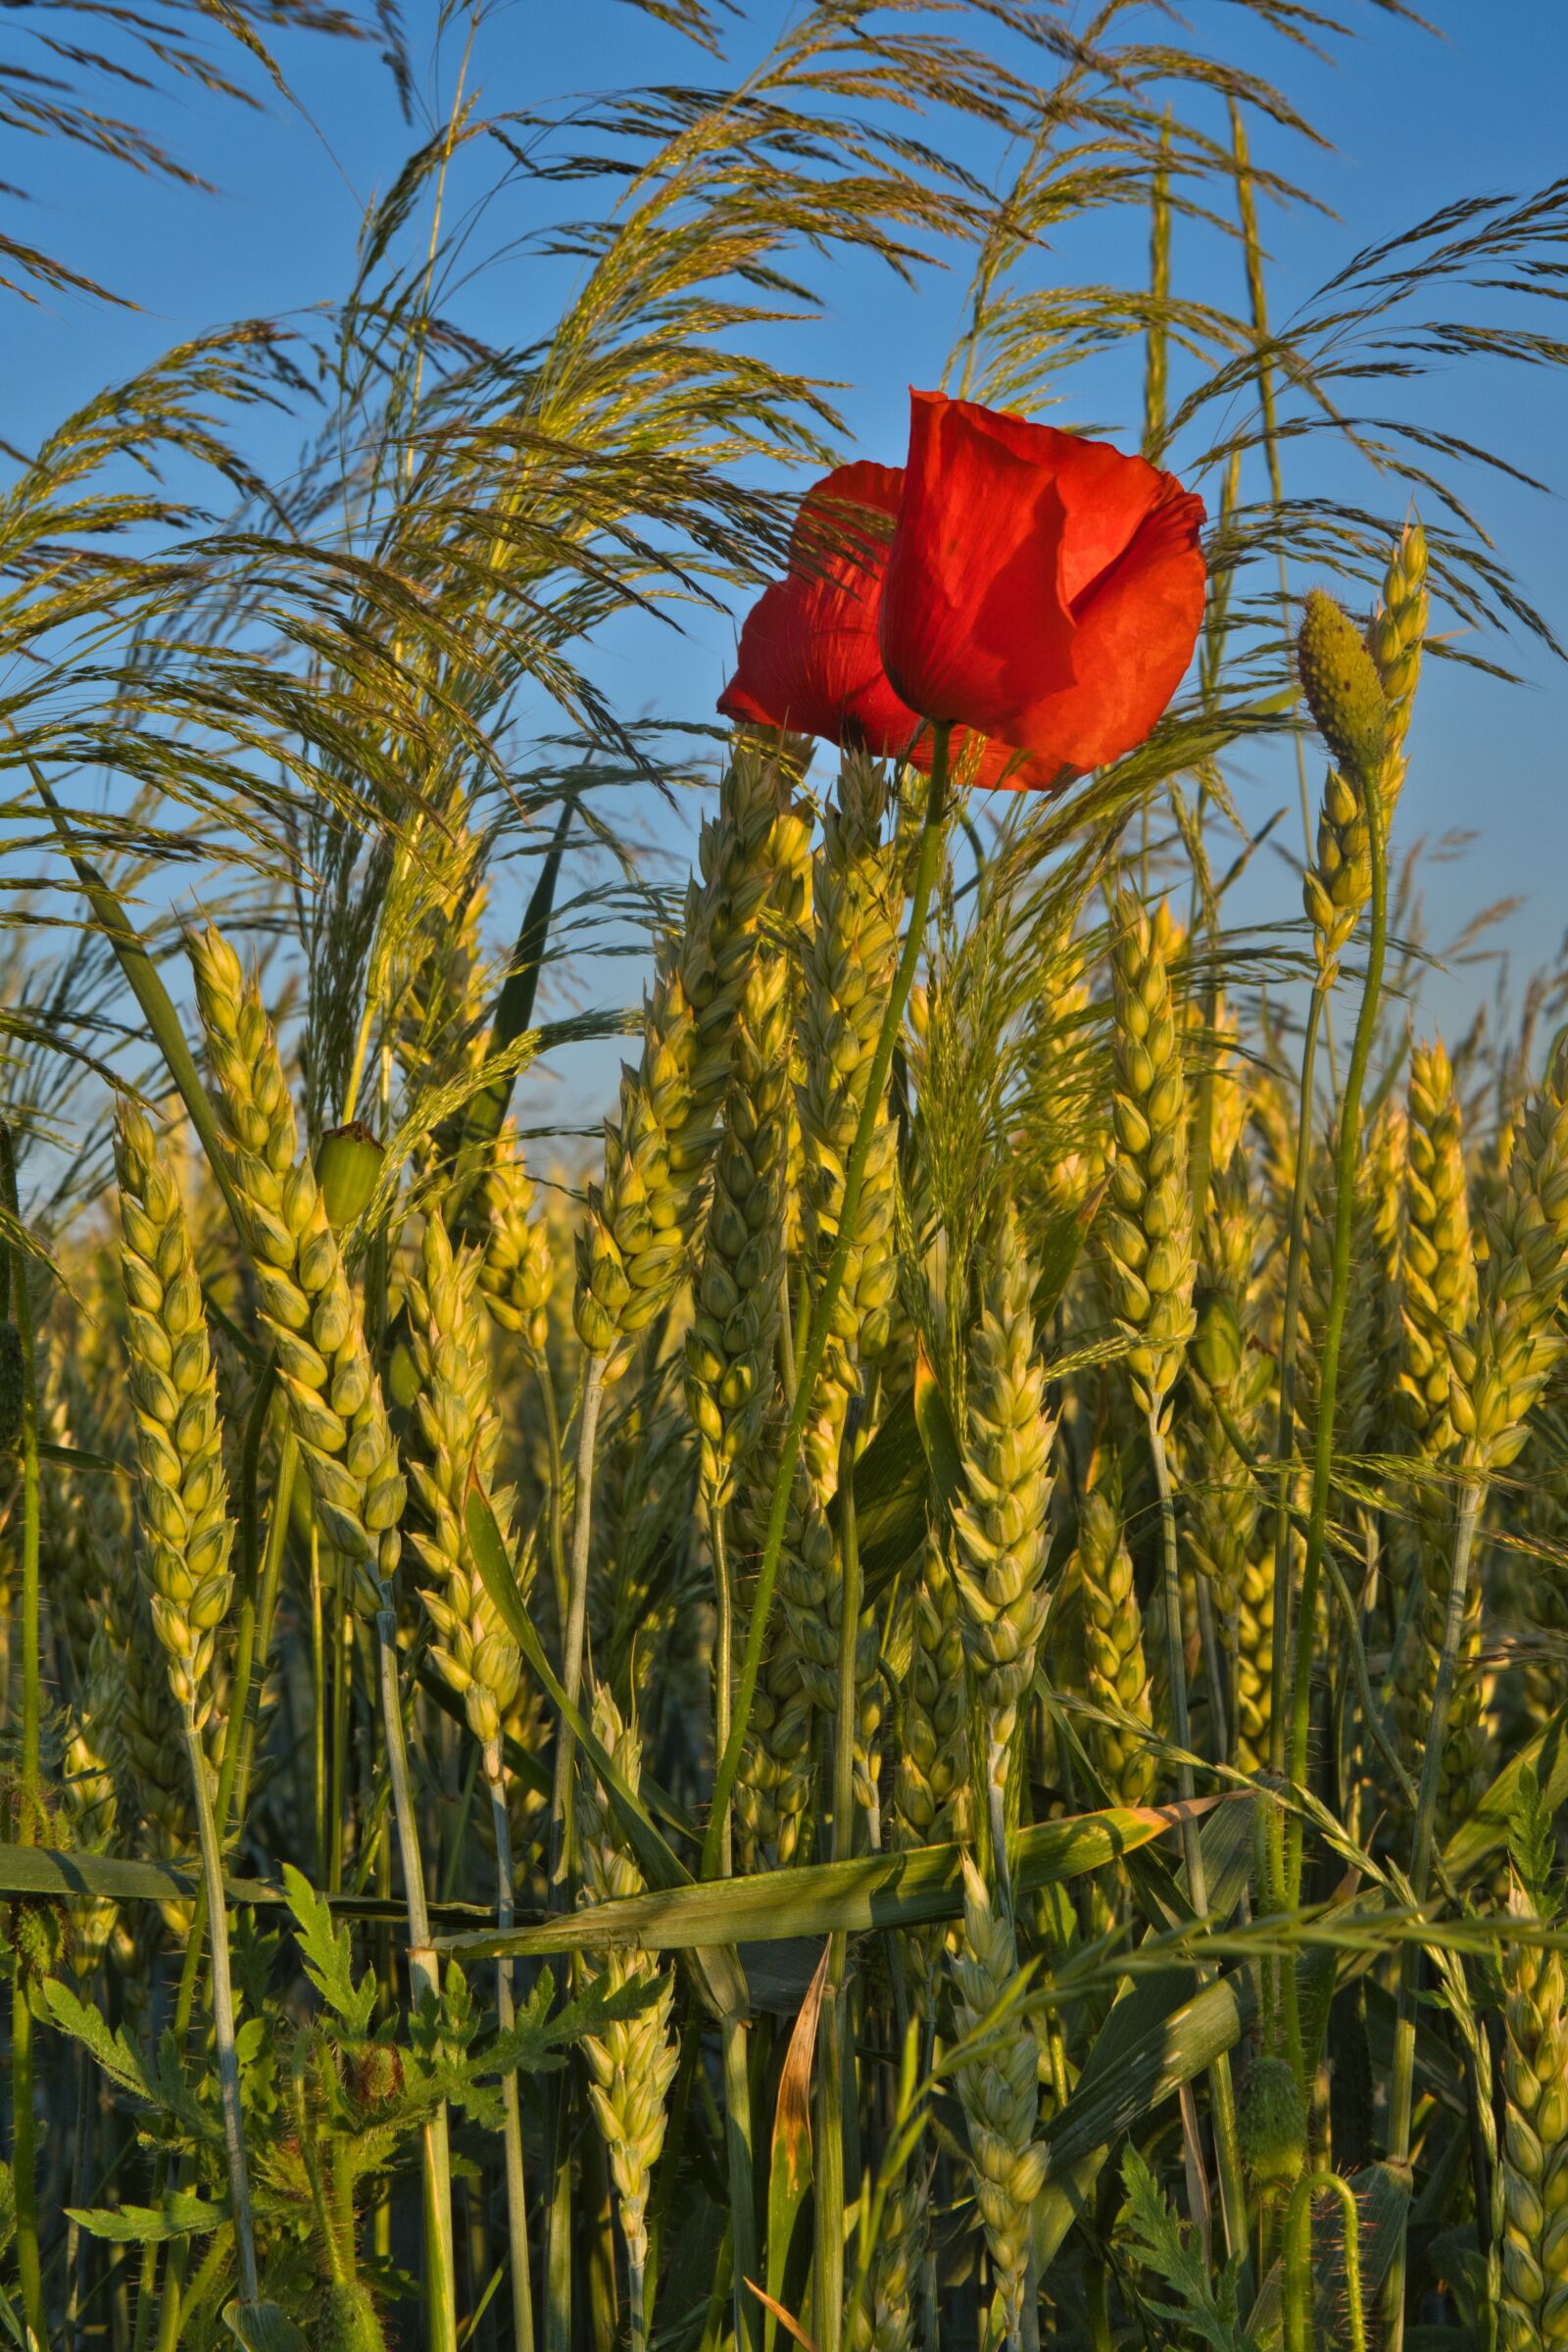 Sony a6400 + E 50mm F1.8 OSS sample photo. Poppy, wheat field, wheat photography